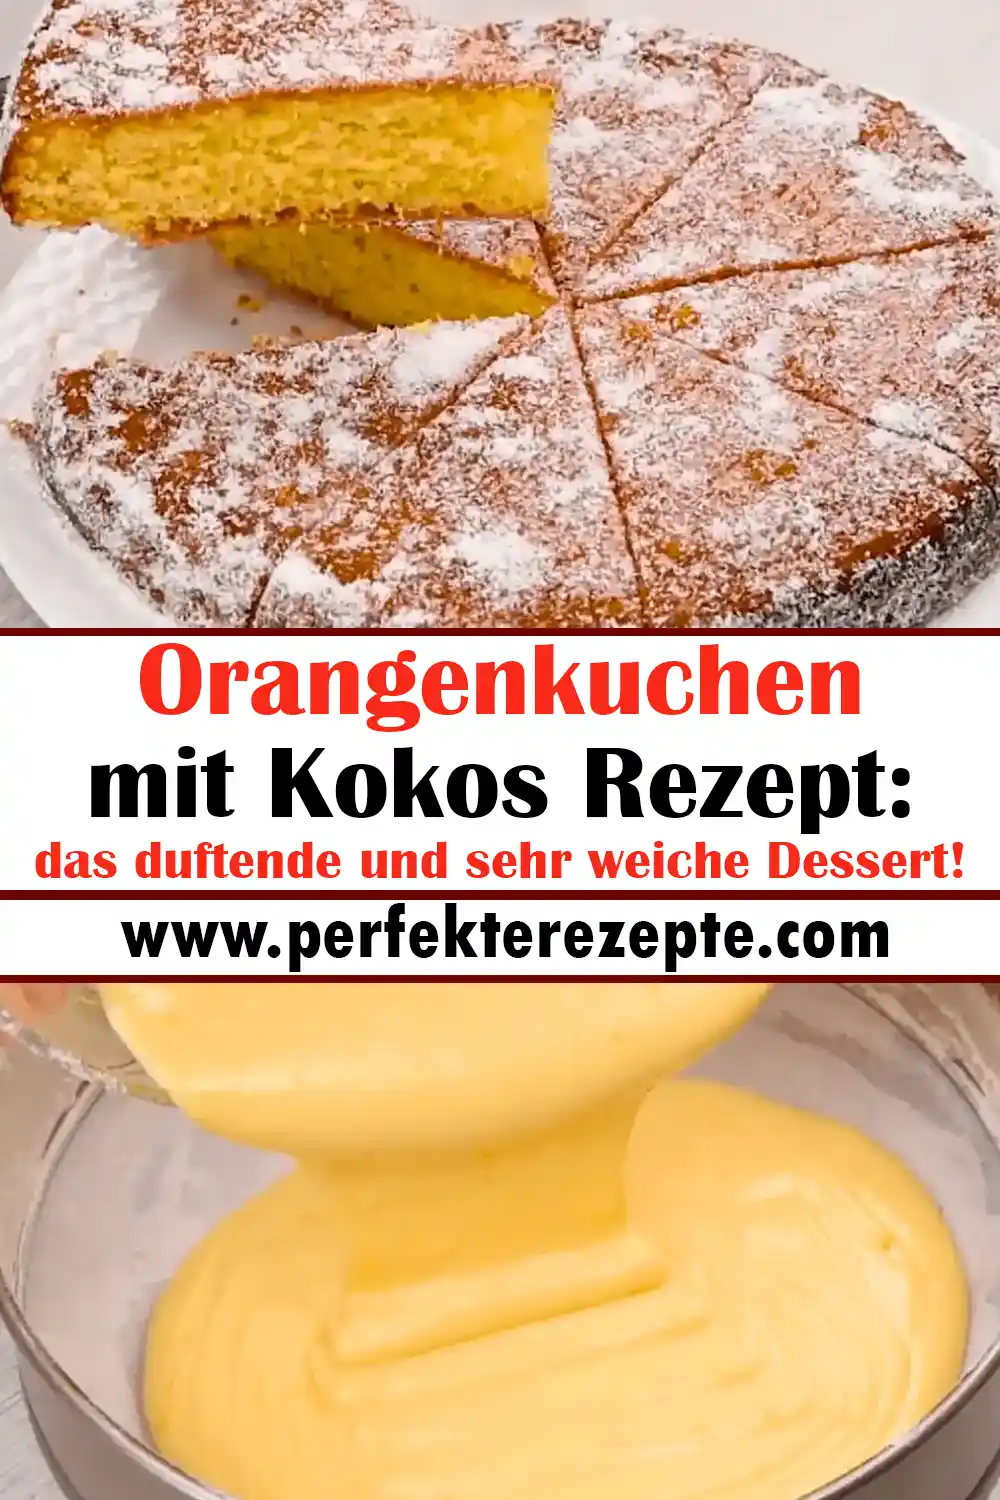 Orangenkuchen mit Kokos Rezept: das duftende und sehr weiche Dessert!